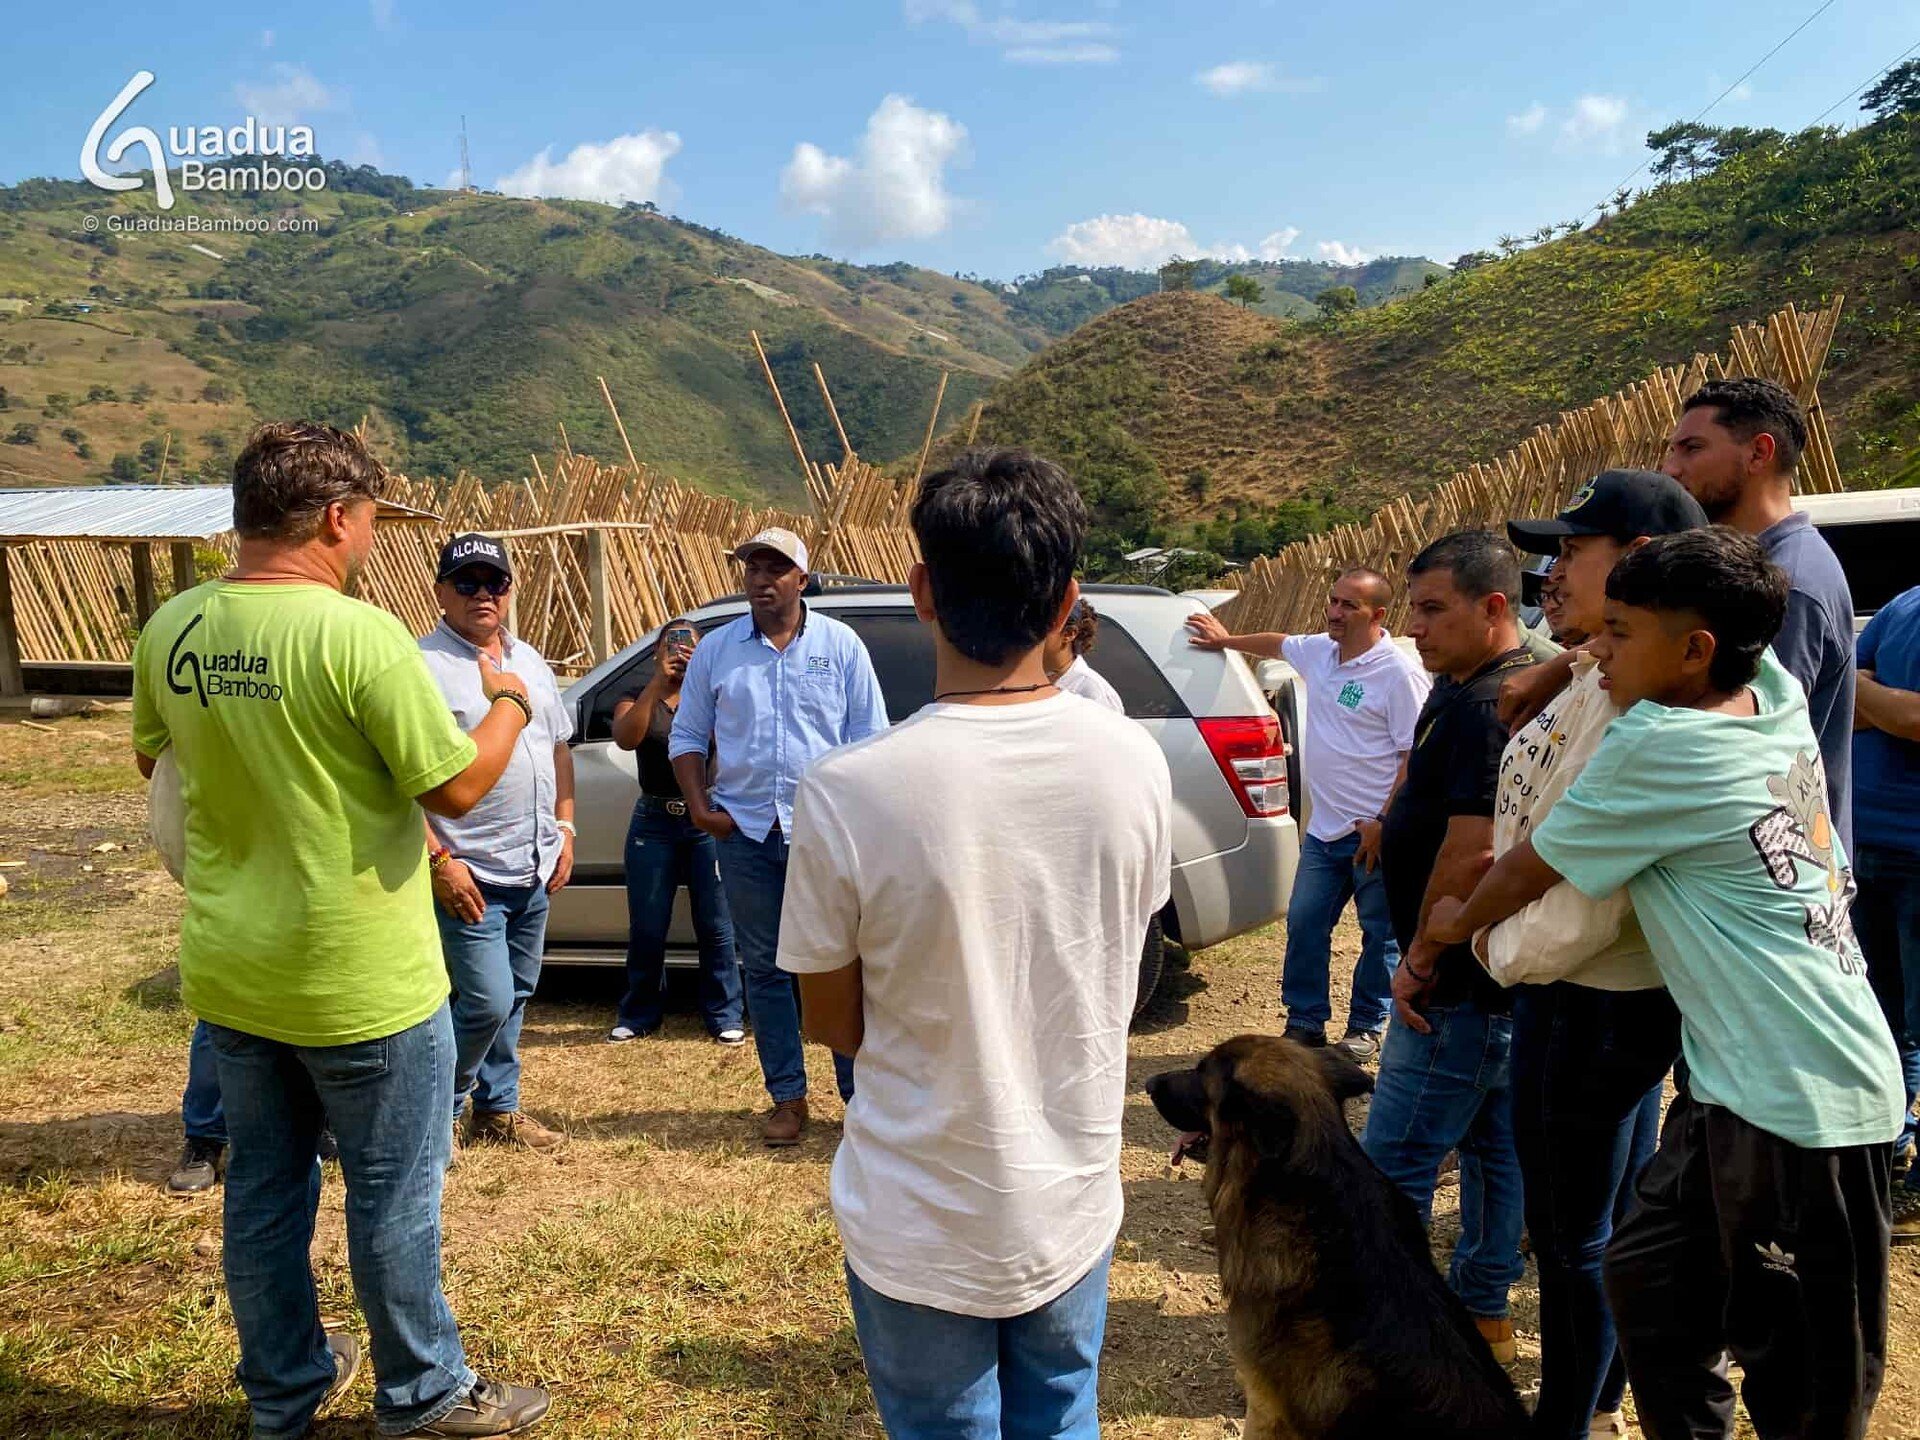 Trabajando junto con la Alcald&iacute;a de Restrepo y la Corporaci&oacute;n Aut&oacute;noma Regional para el mejoramiento de la cadena de la Guadua en el Valle del Cauca. 🌿
Gracias al alcalde Luis Ortega Meneses, el director y los representantes de 